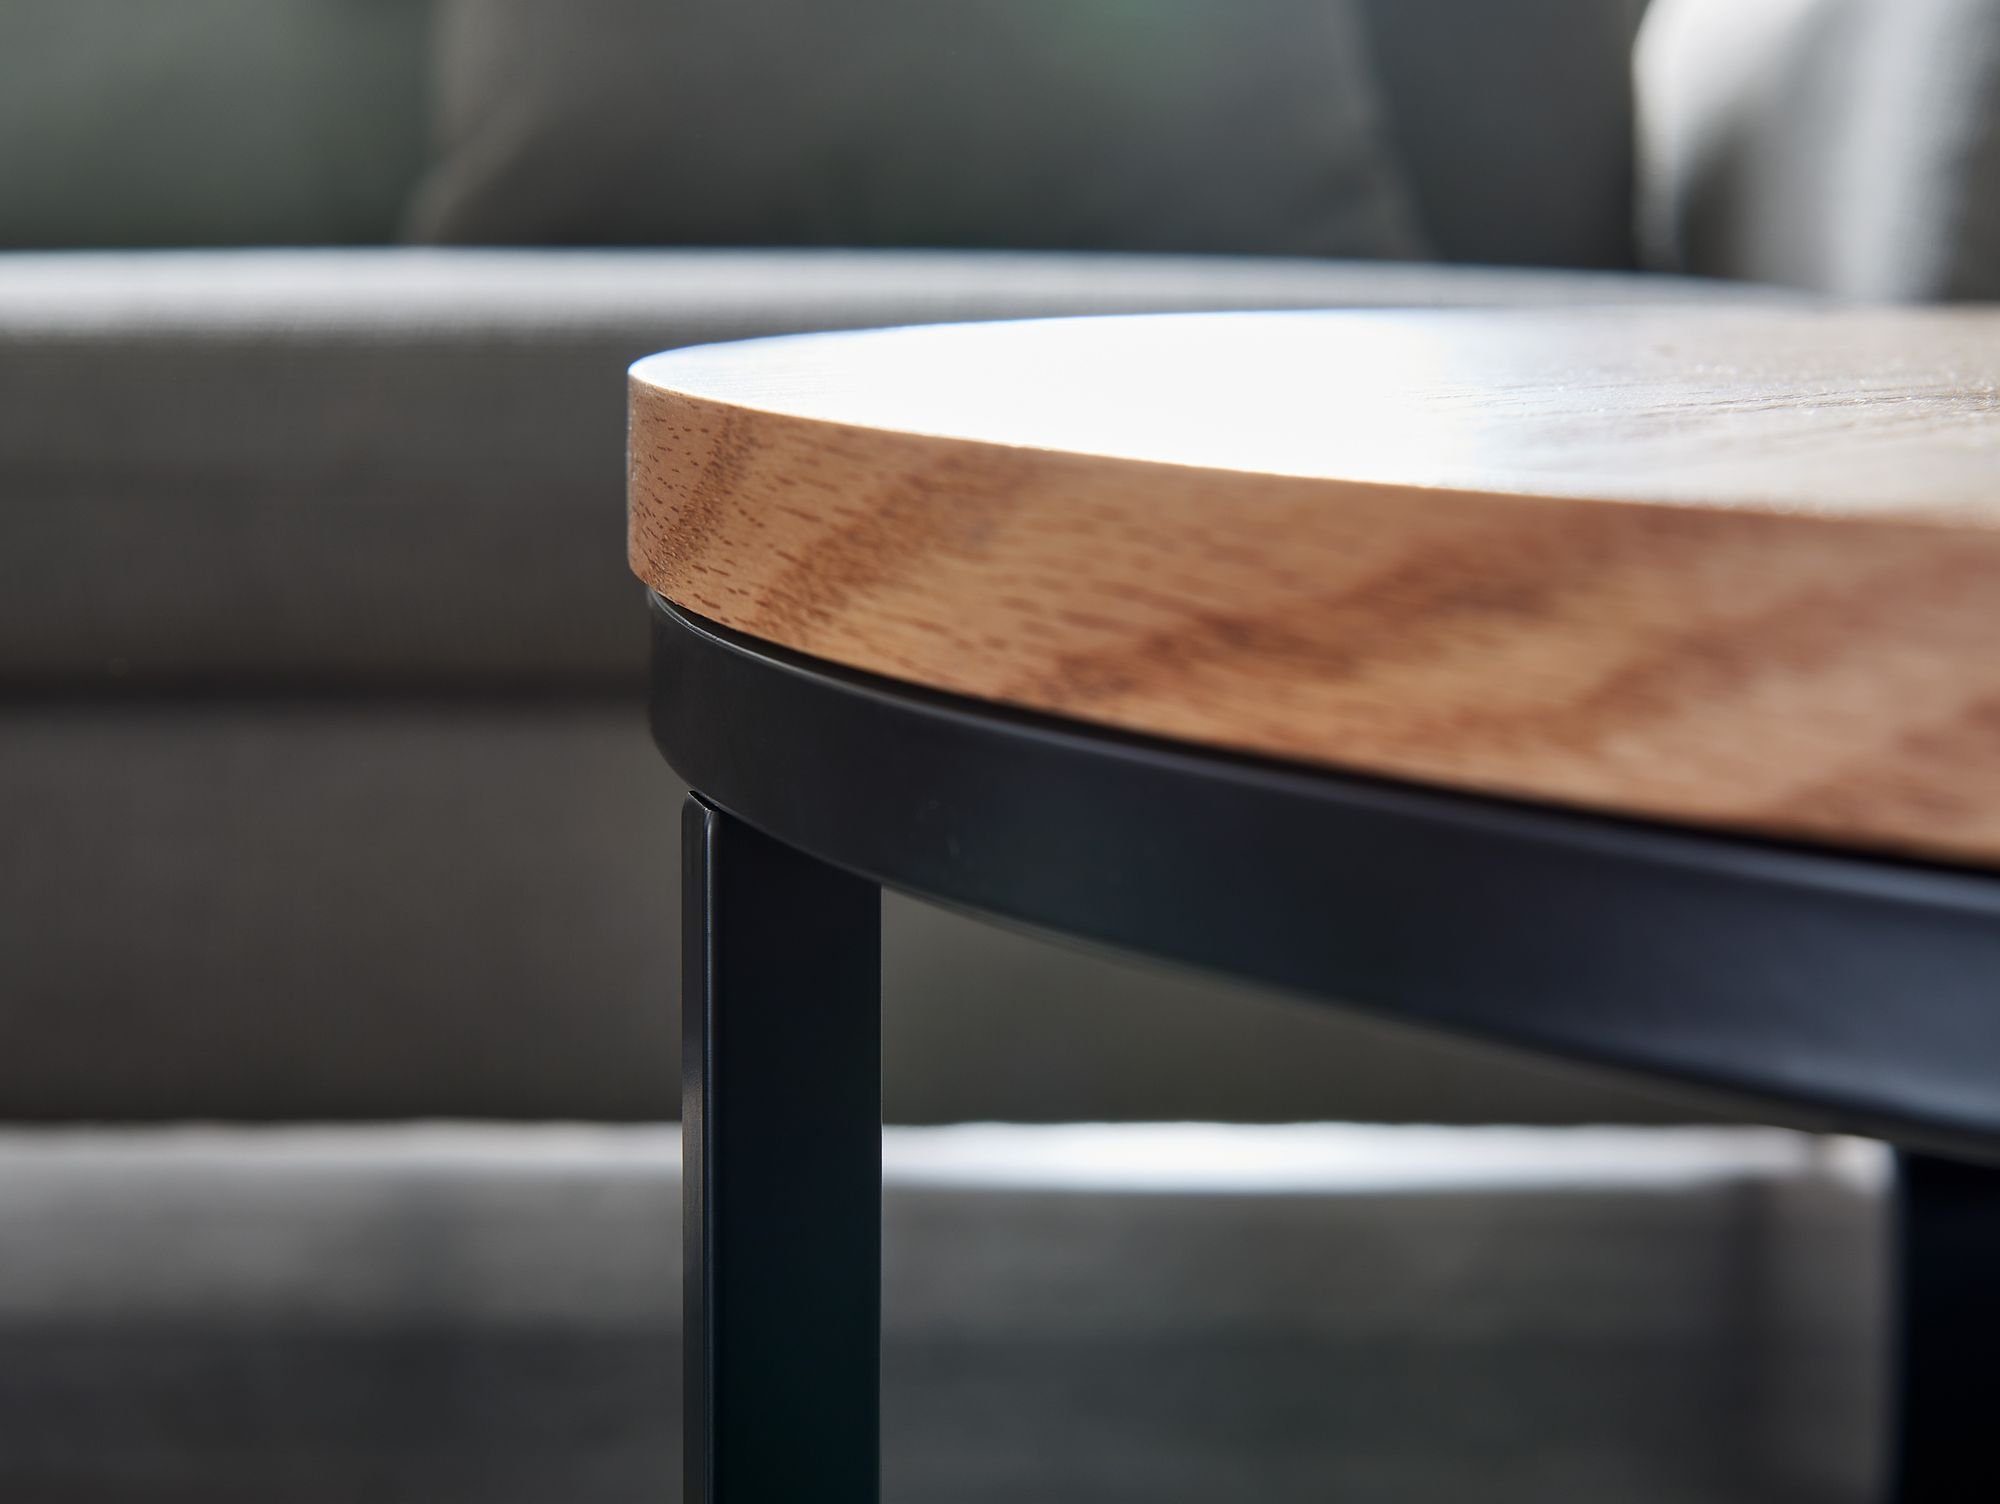 Rund, cm Kaffeetisch Metall, Holz Modern / (70x70x45 Sofatisch Eiche), Wohnling Wohnzimmertisch WL6.511 Tisch Design Couchtisch